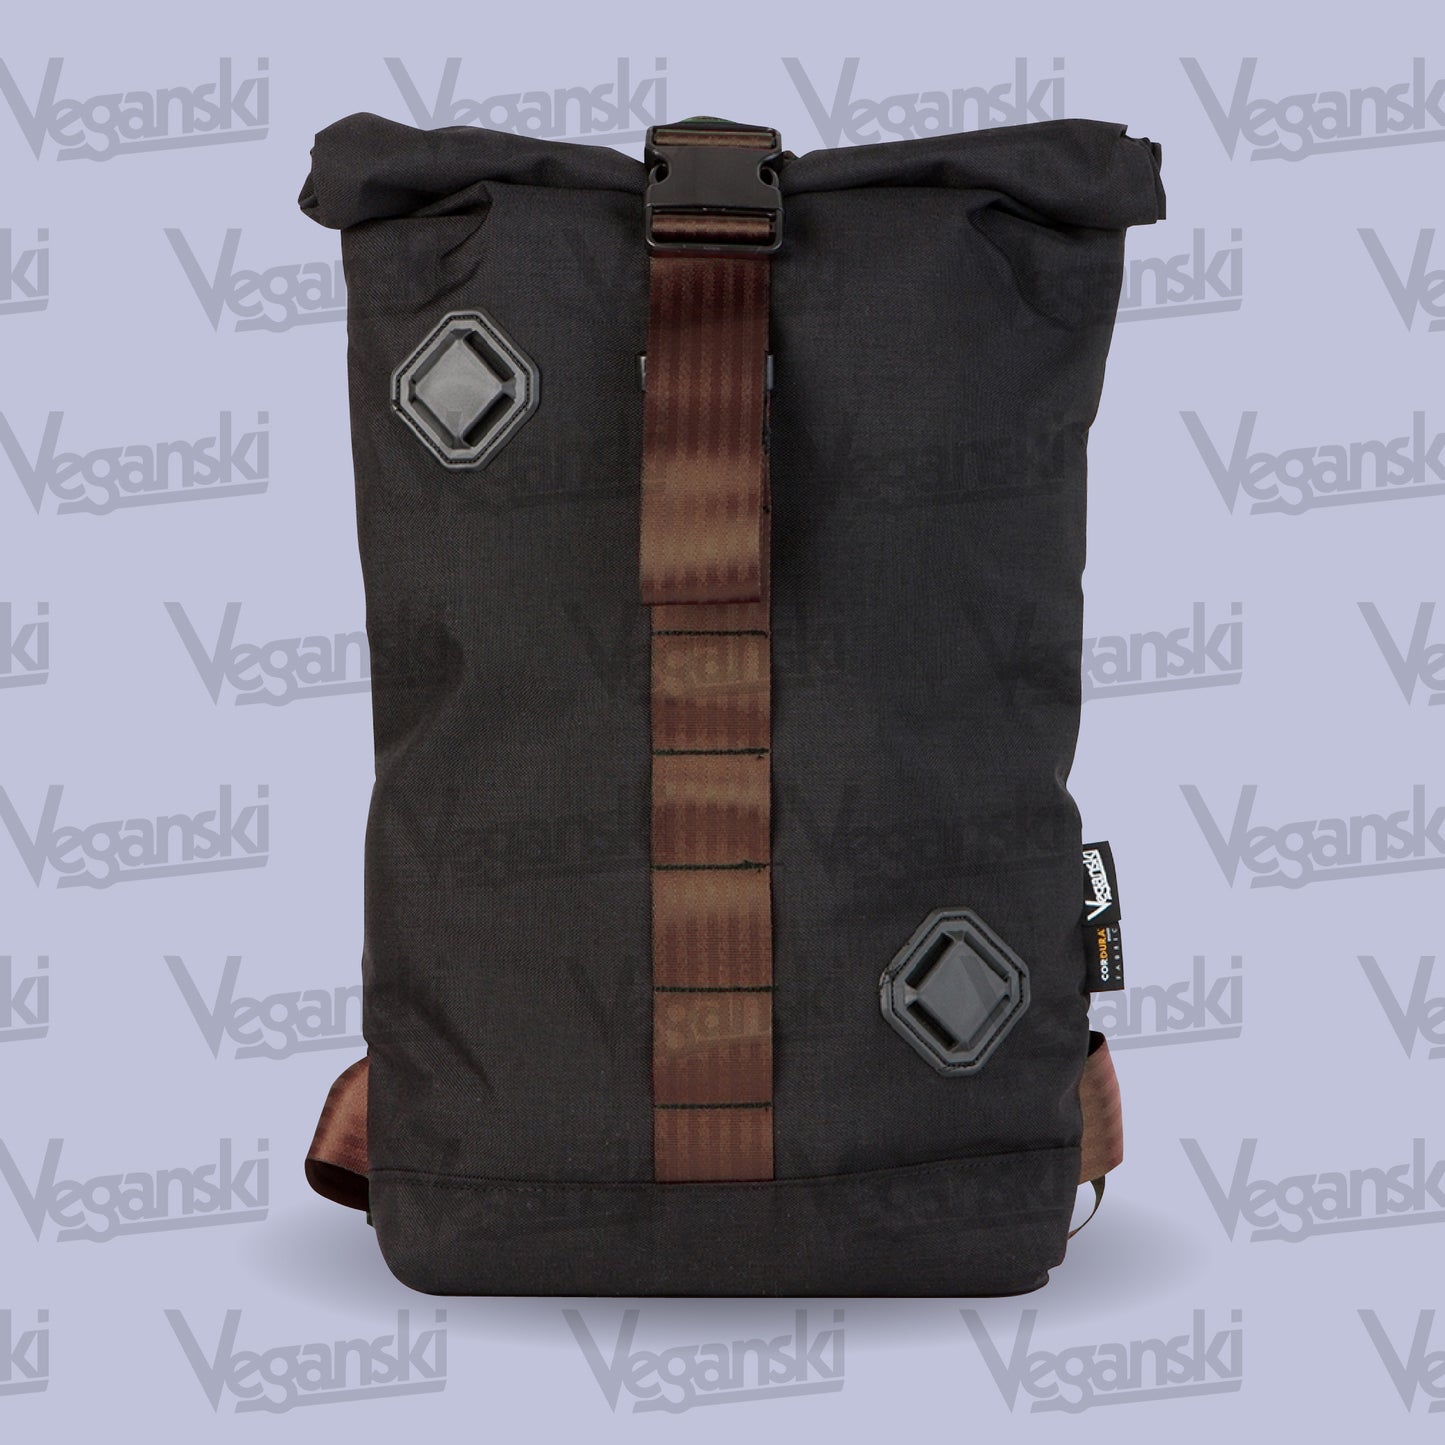 Veganski Light Bag - Brown